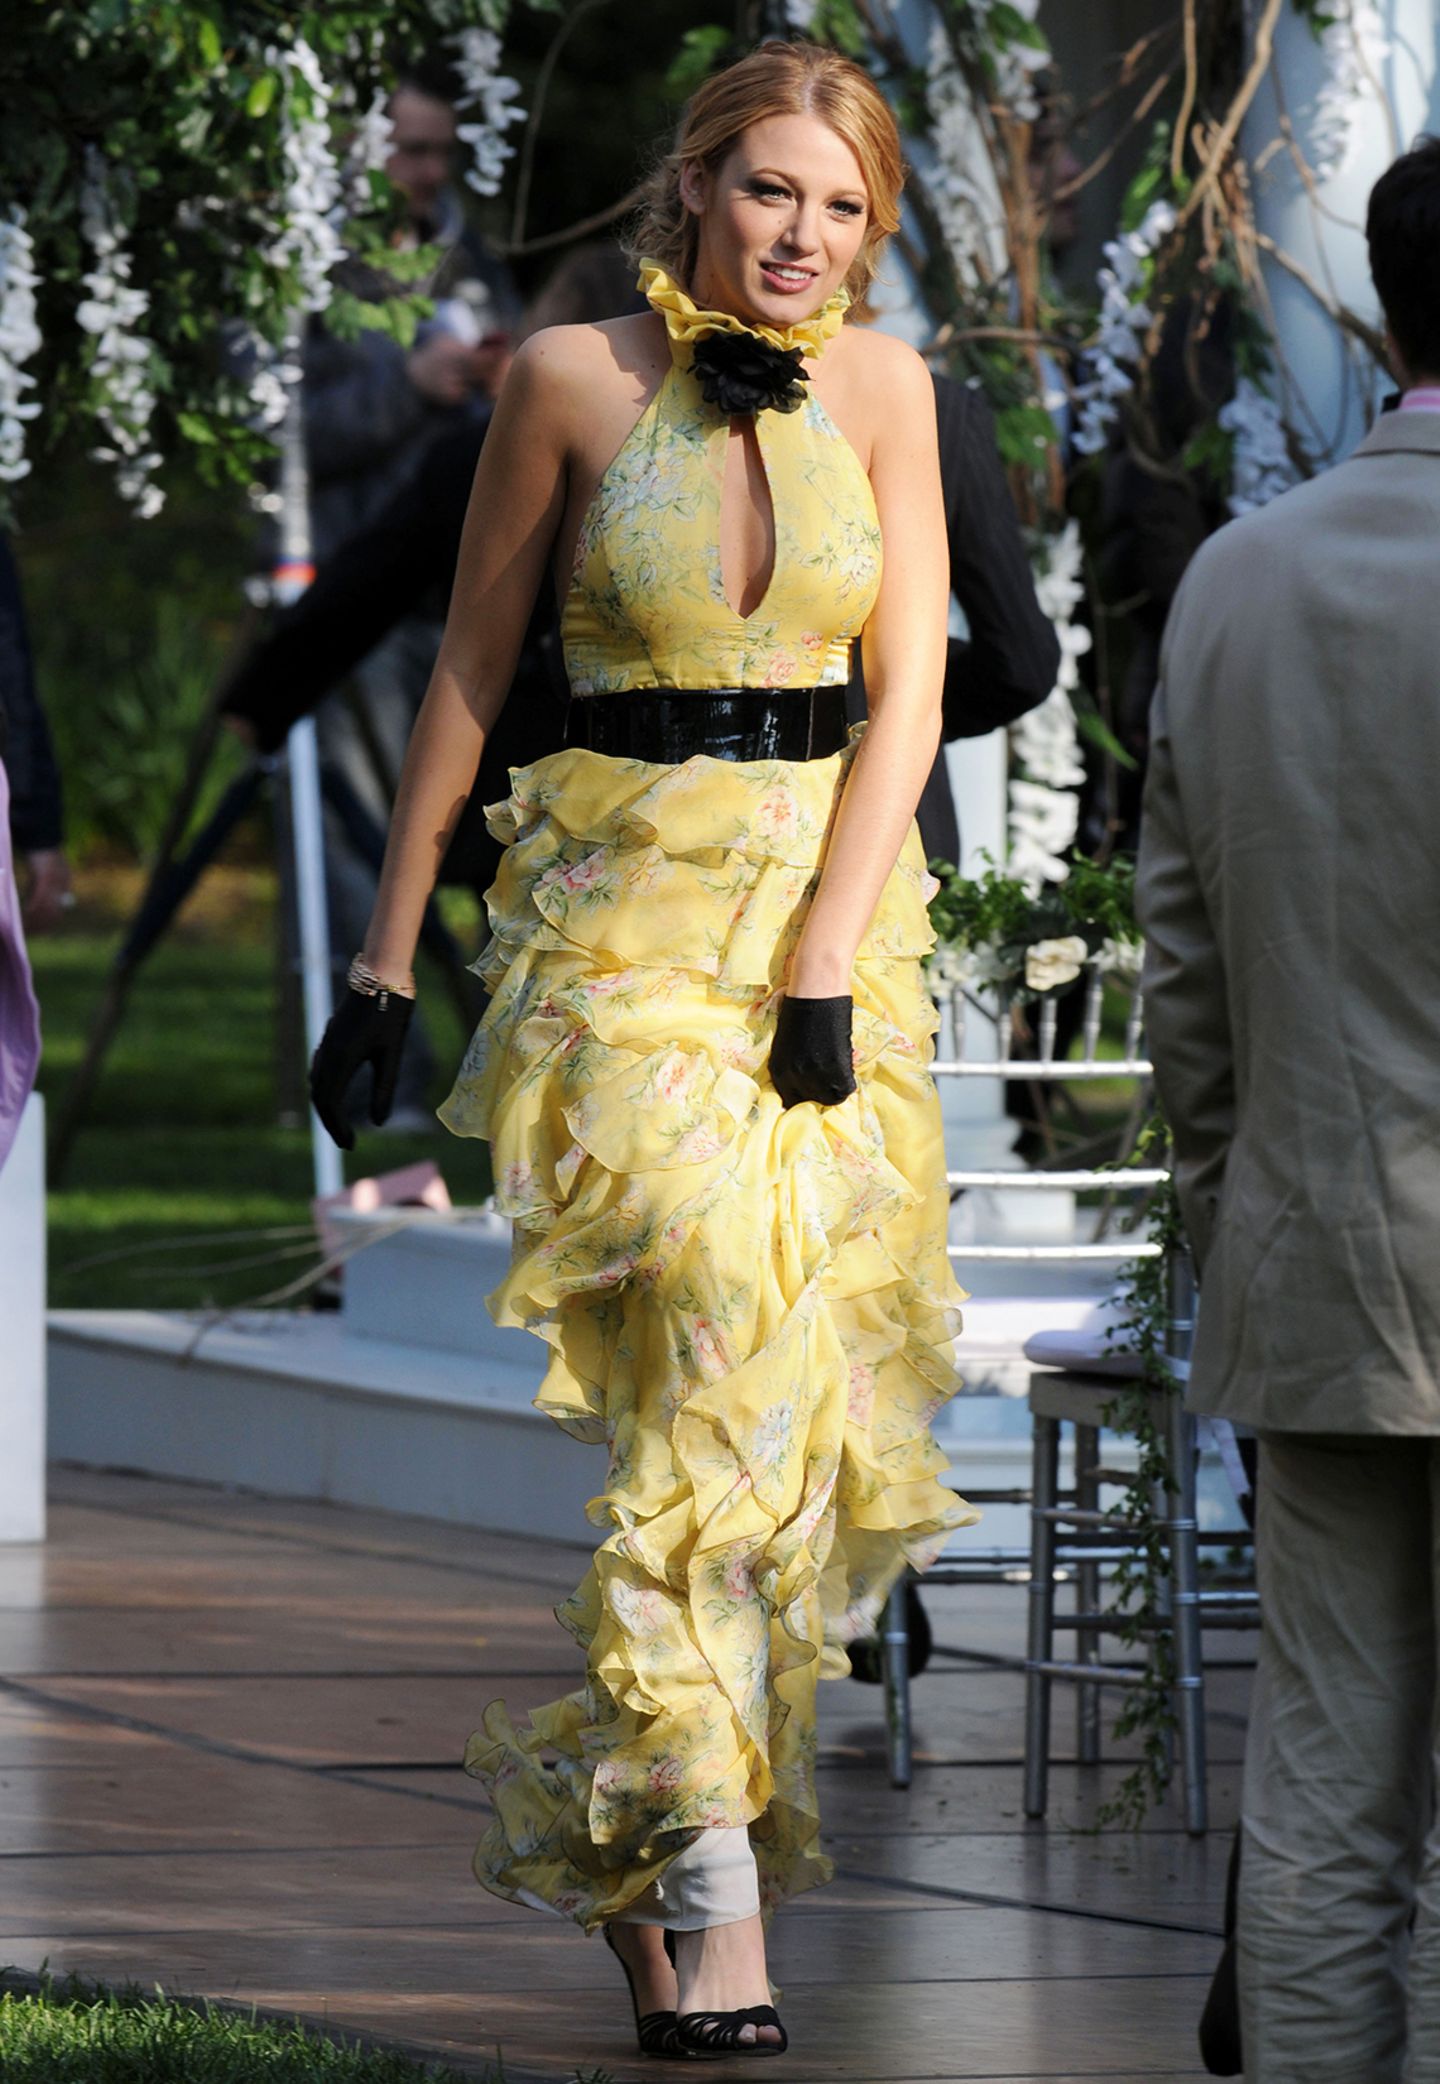 Serena van der Woodsen Wearing a Yellow Halter Dress